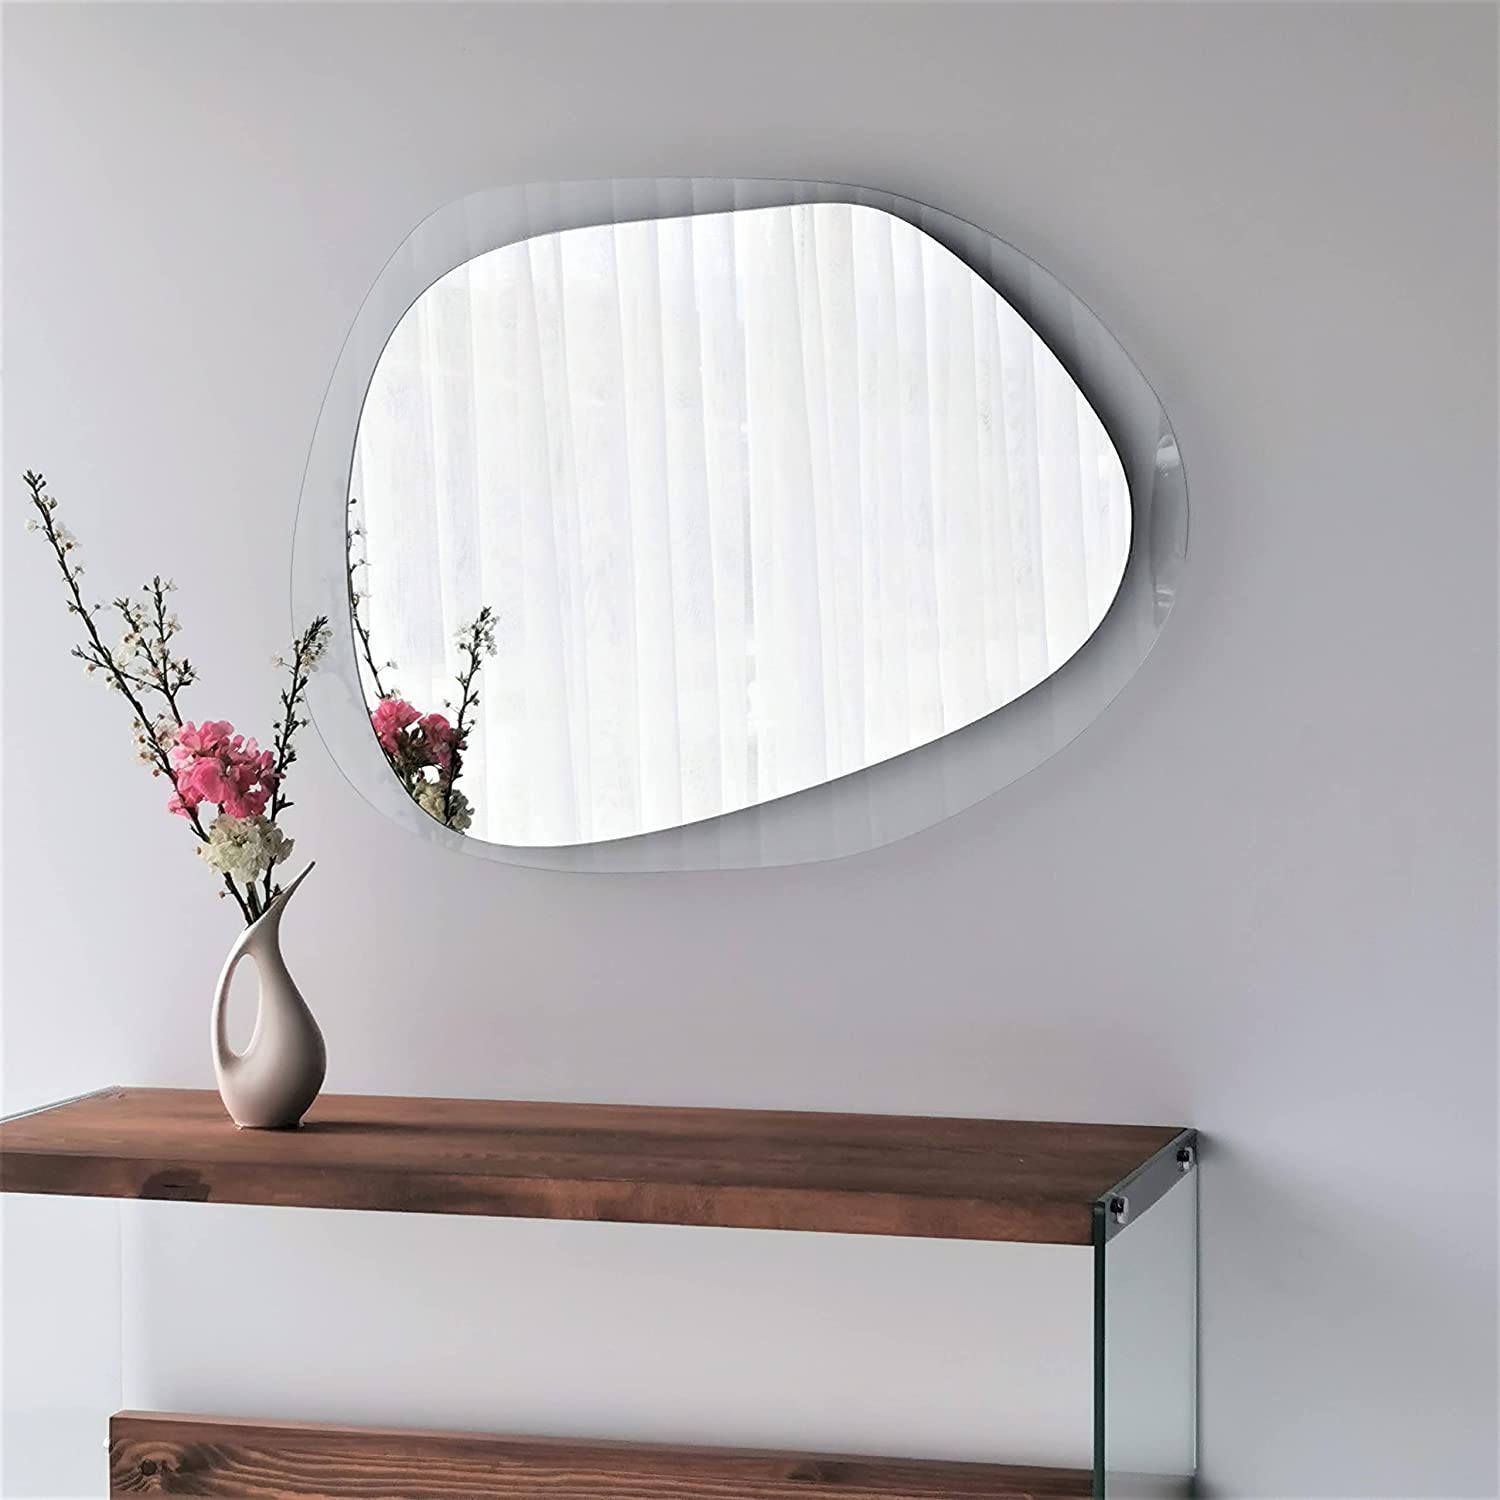 Wandtattoos spiegel - Die hochwertigsten Wandtattoos spiegel ausführlich verglichen!